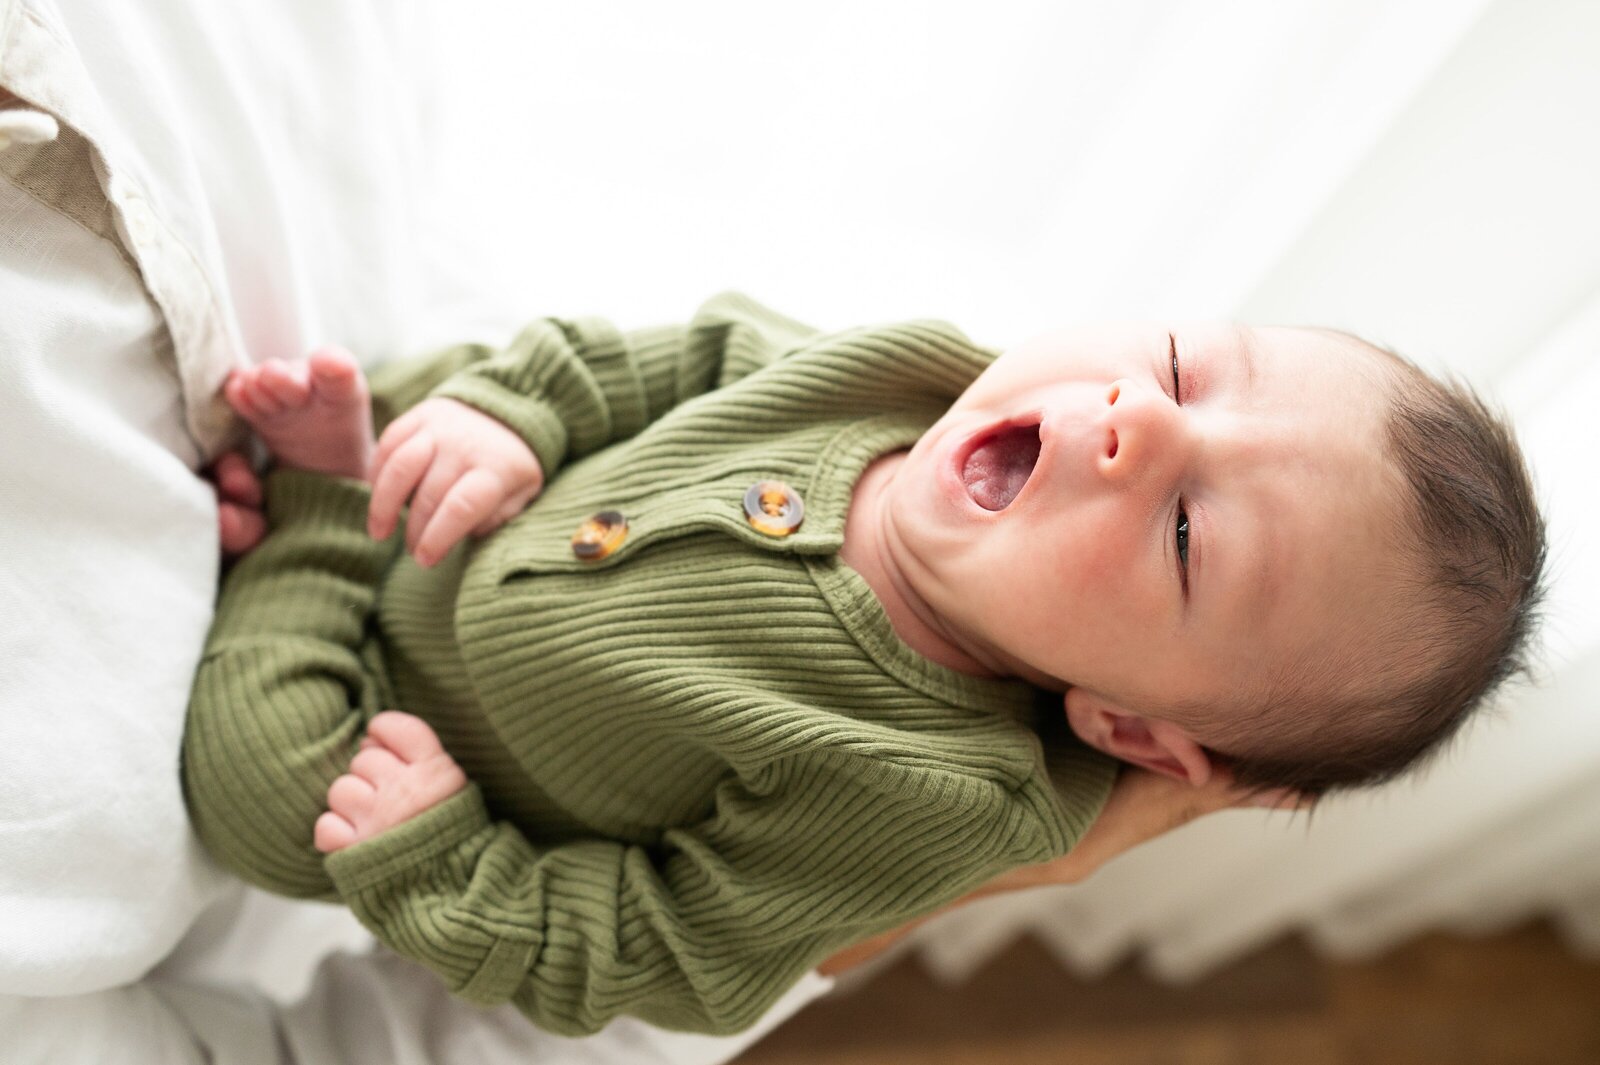 newborn boy in a green onesie yawning